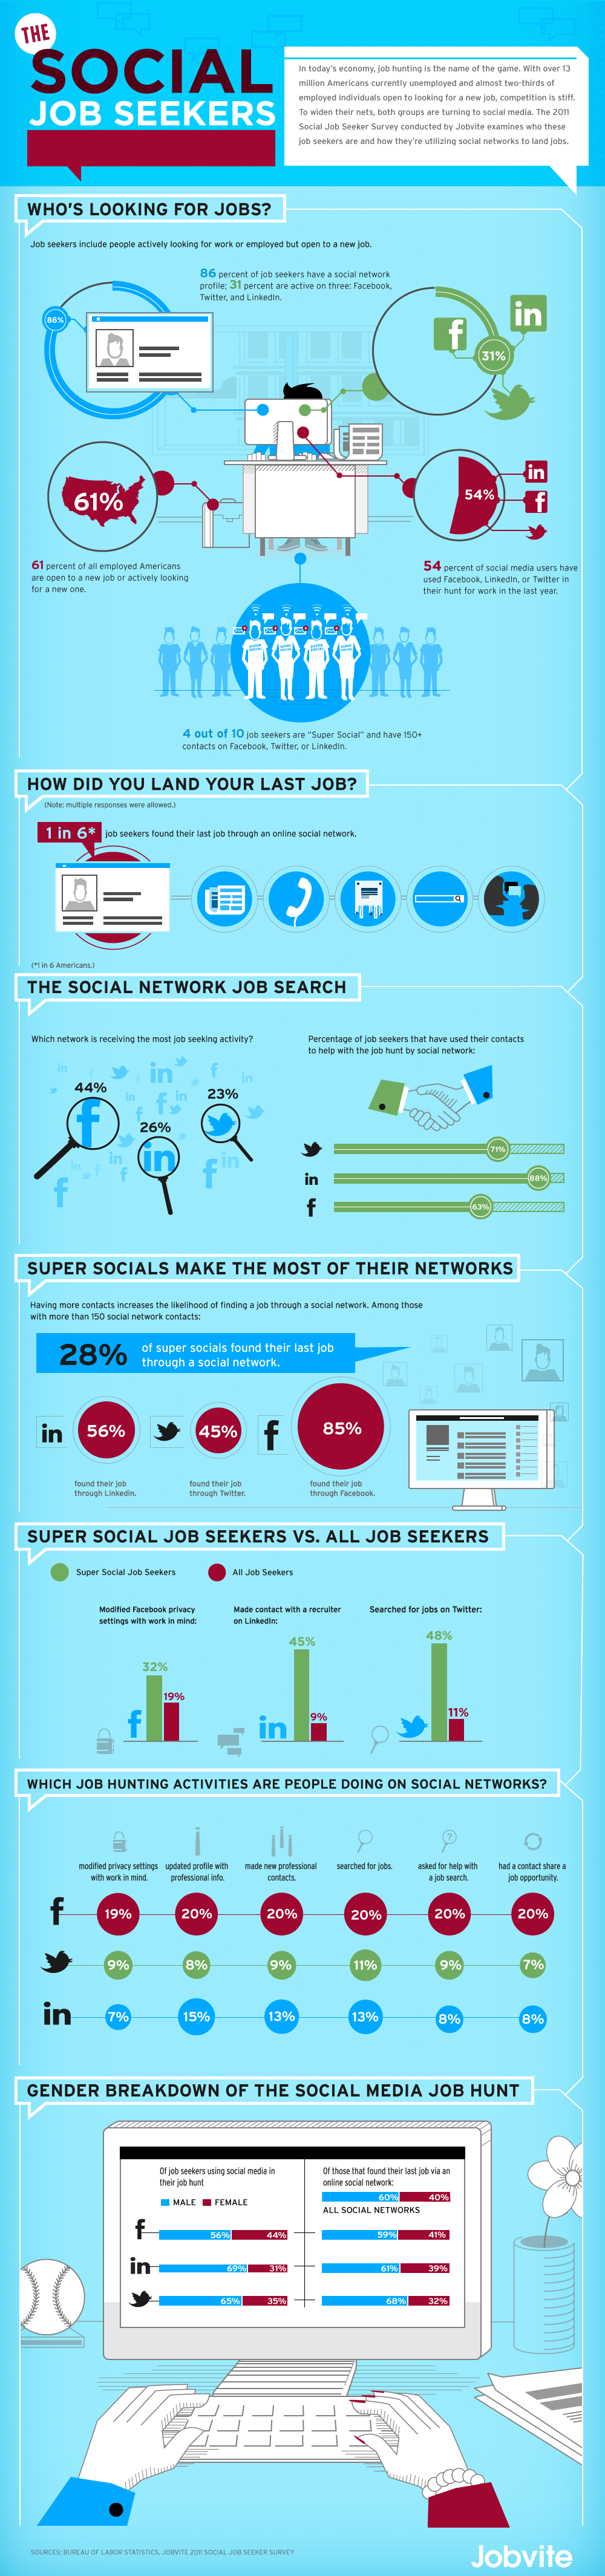 Jobvite Social Job Seeker Infographic